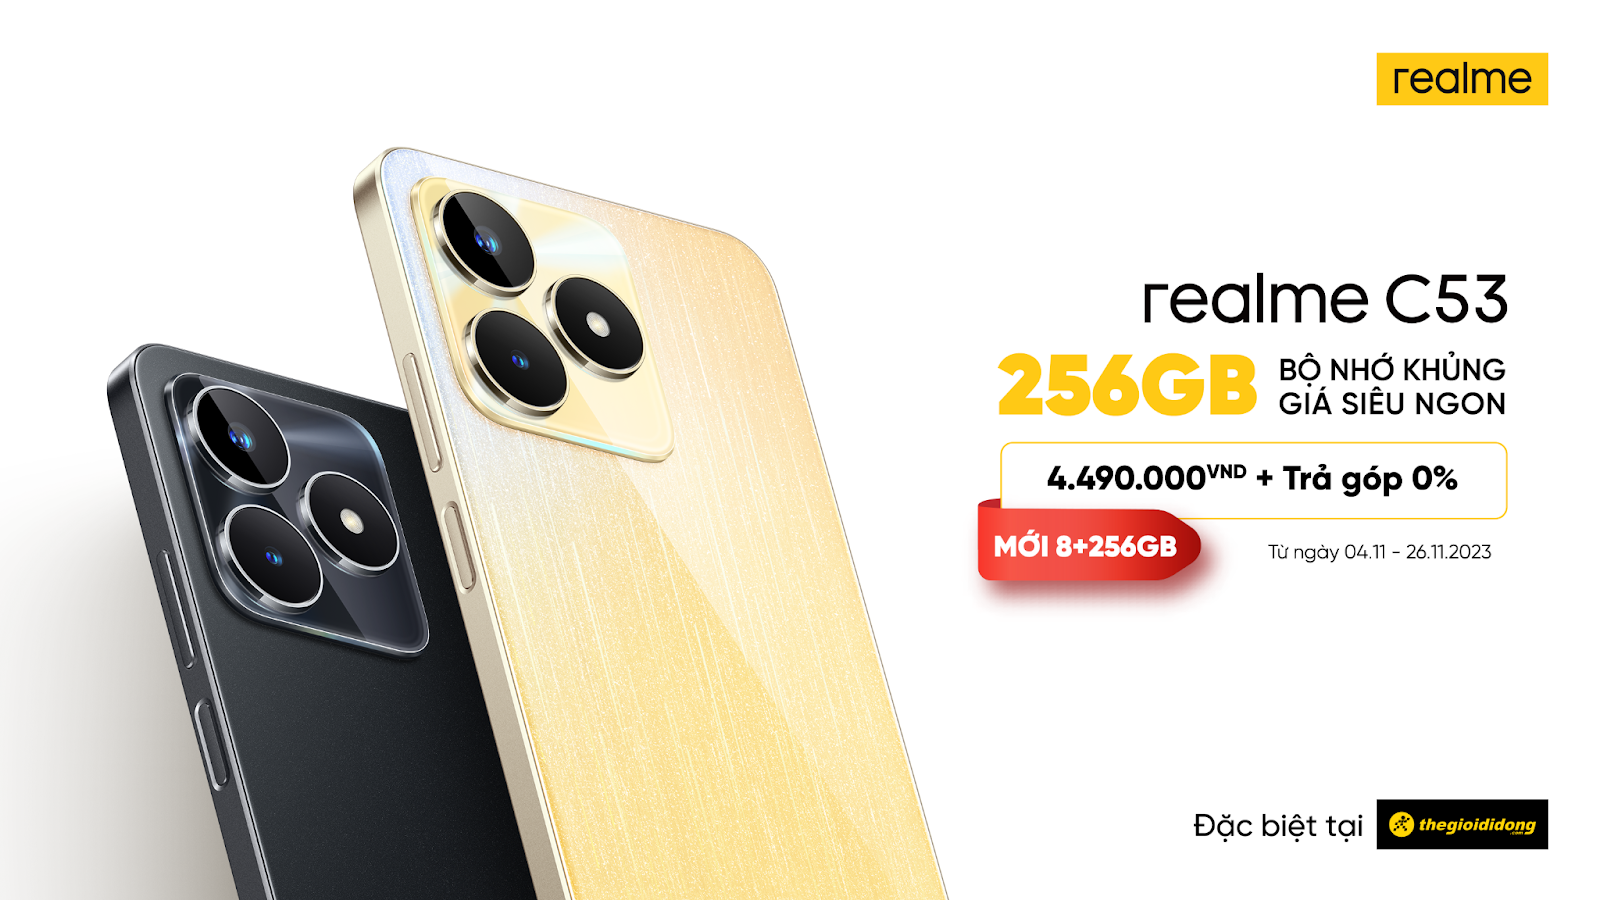 Realme c53 8+256gb sẽ được bán với giá 4. 490. 000 đồng tại thế giới di động từ ngày 4-26/11/2023